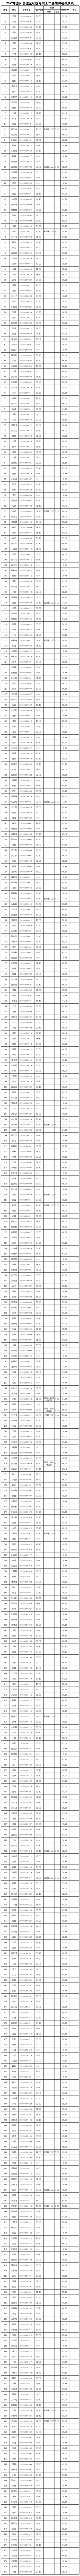 2022年咸宁市崇阳县城区社区专职工作者招聘笔试成绩公告